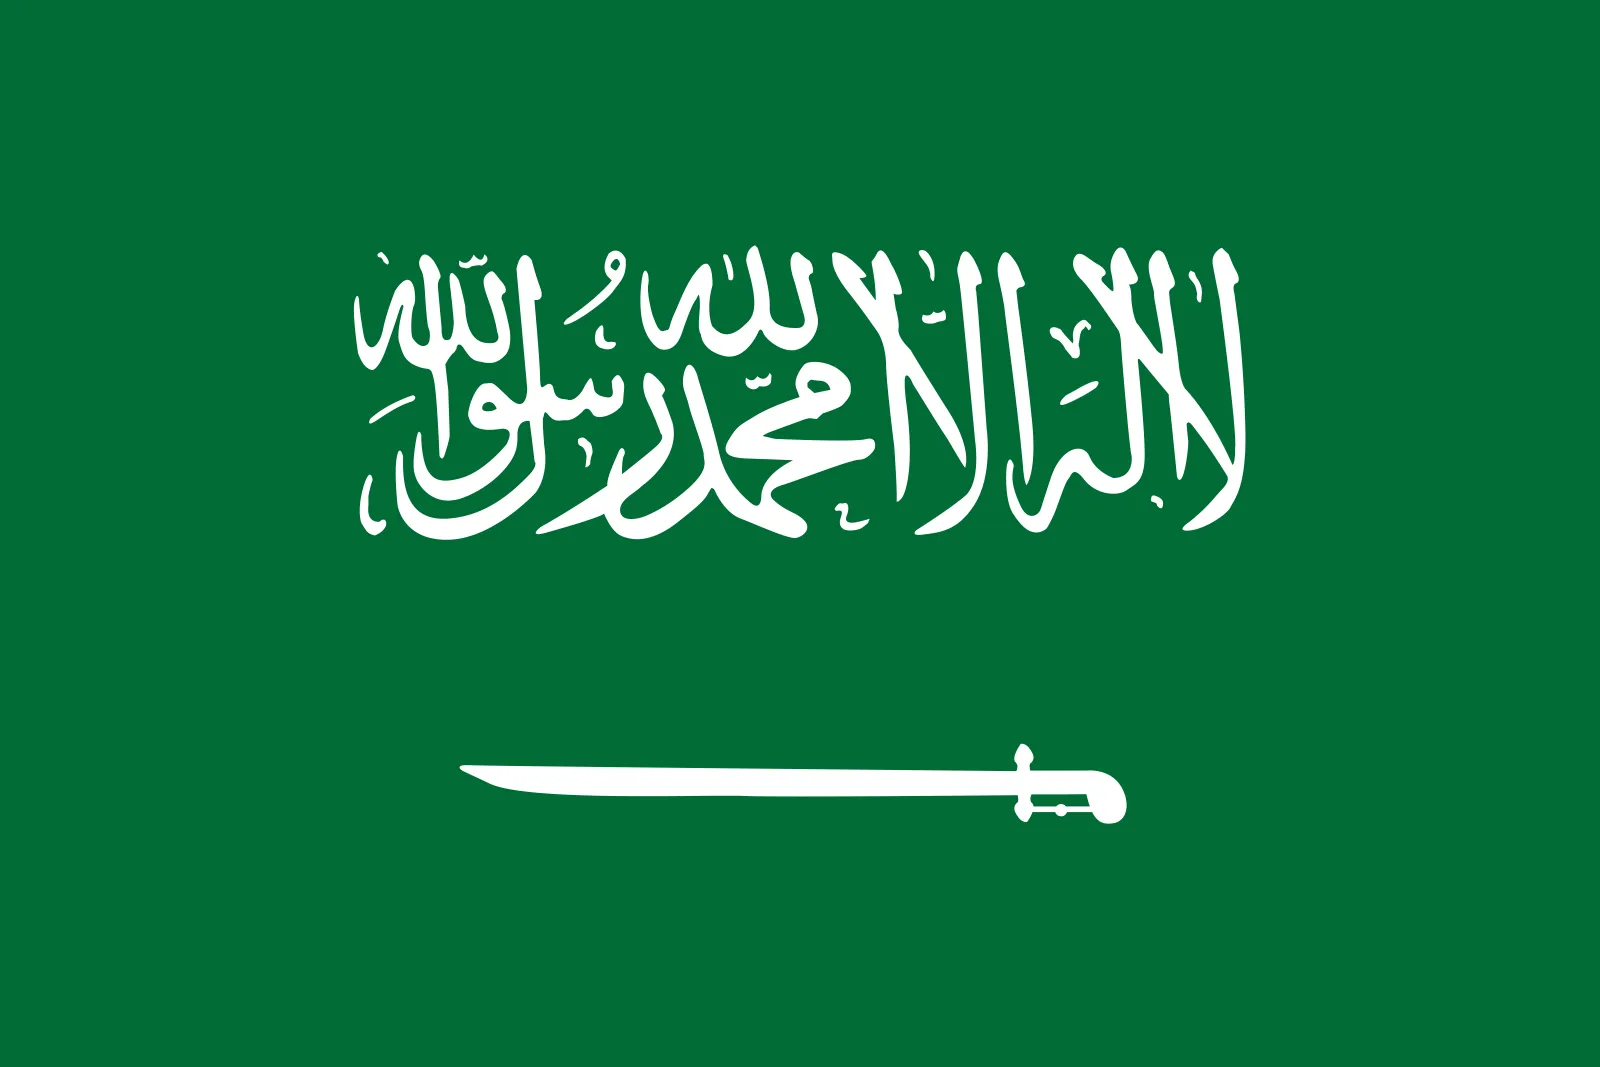 沙特阿拉伯女足(U17)  logo